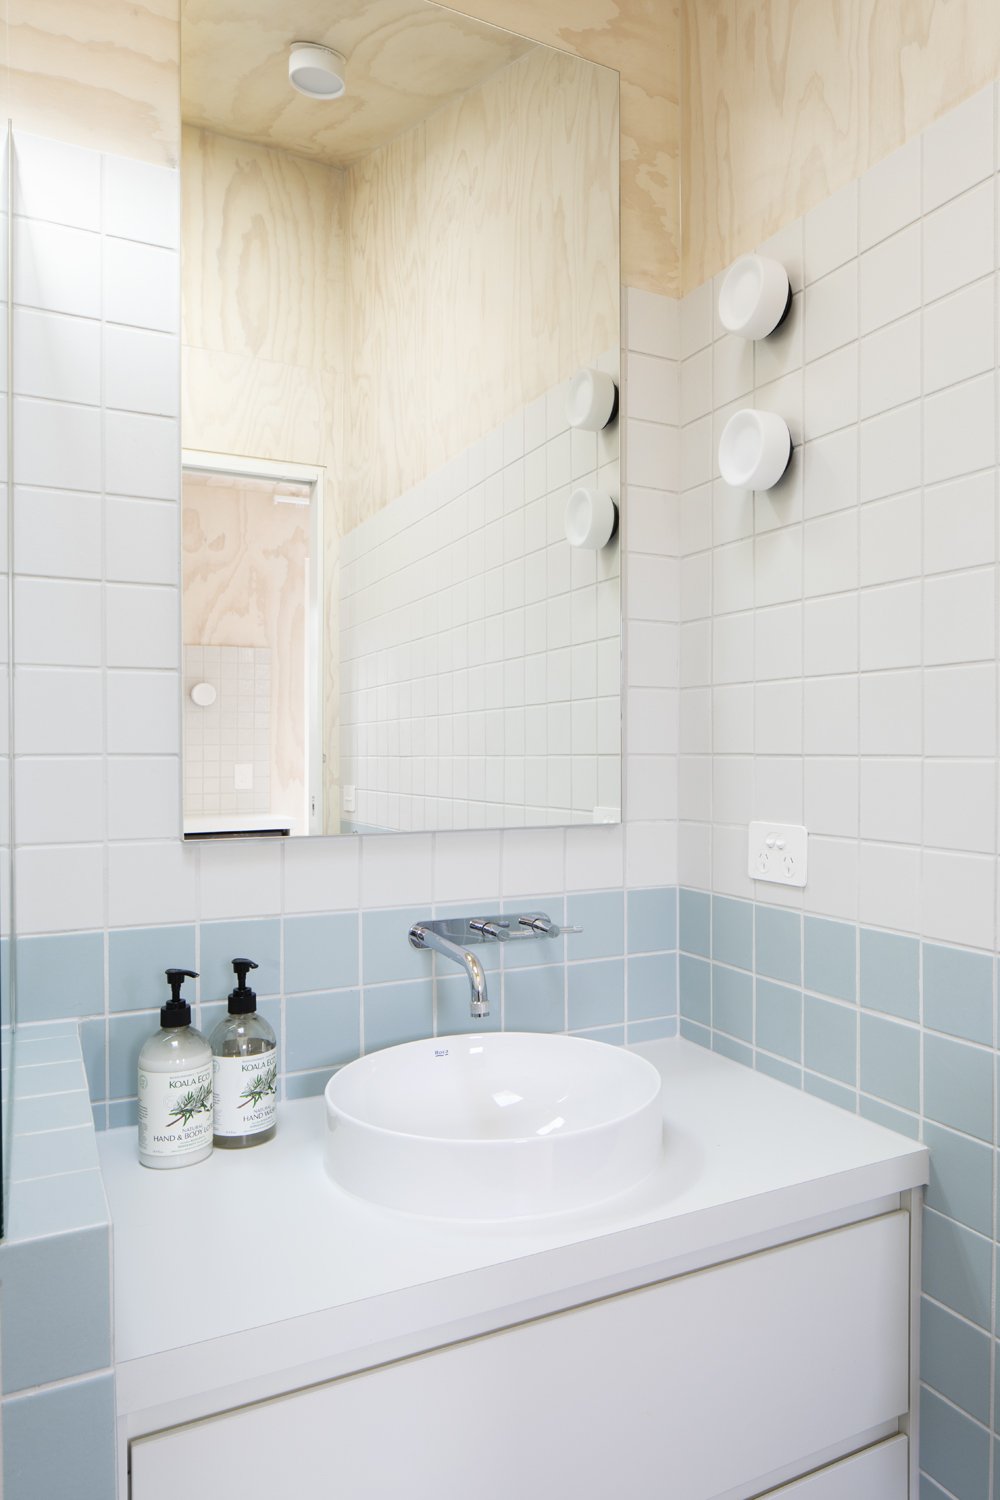 Bathroom designed by Melbourne interior designer Meredith Lee